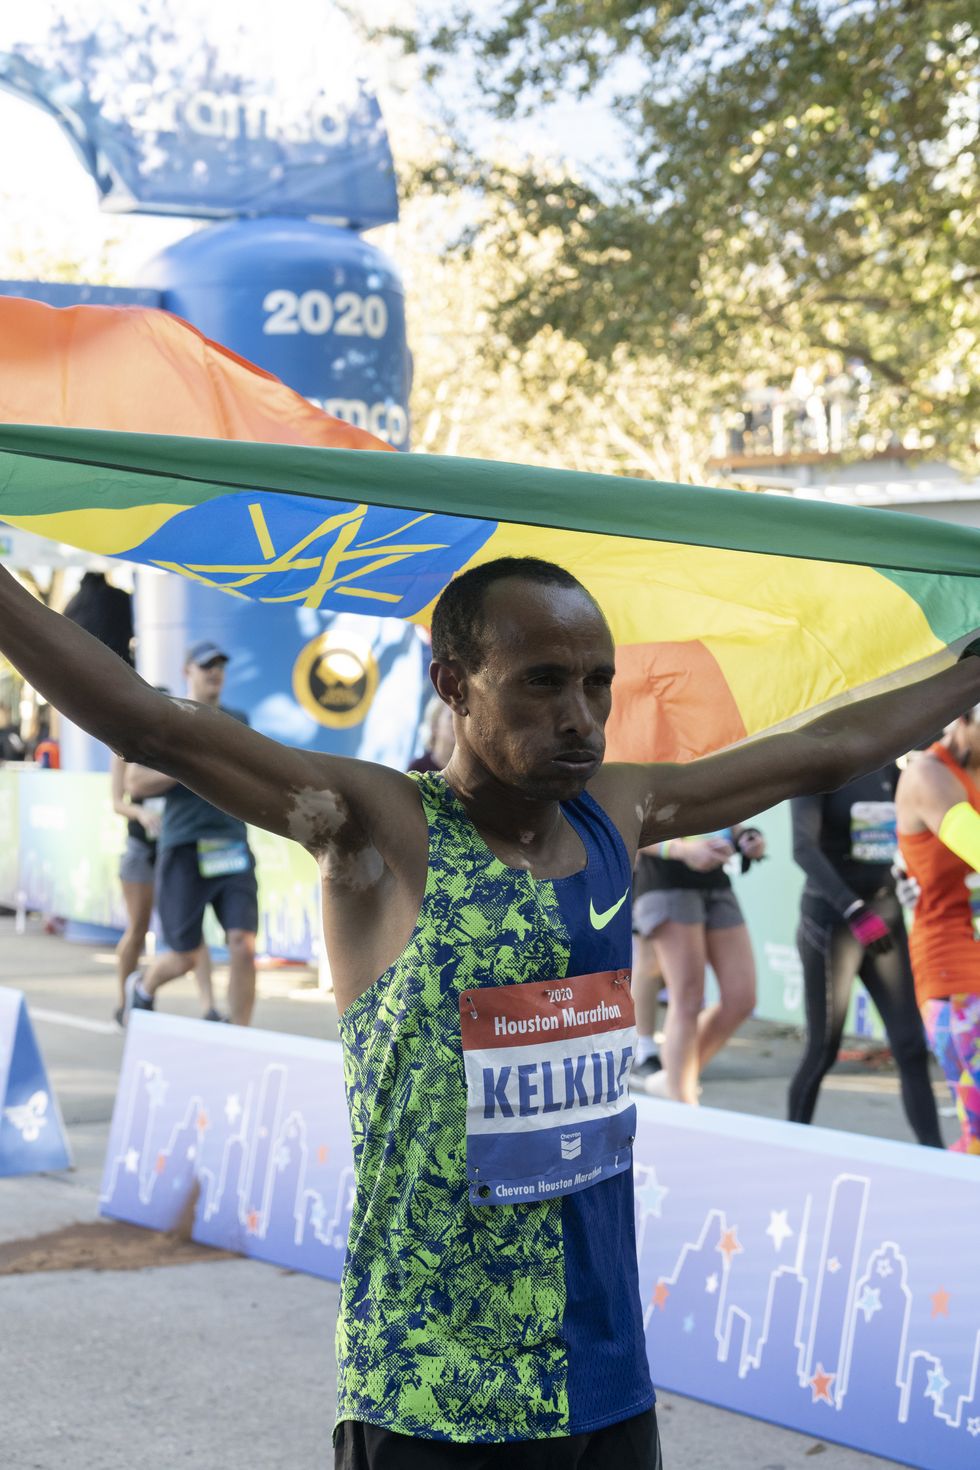 Kelkile Woldaregay Gezahegn of Ethiopia won his ninth career marathon in 2:08:36 in Houston on Sunday, January 19, 2020.